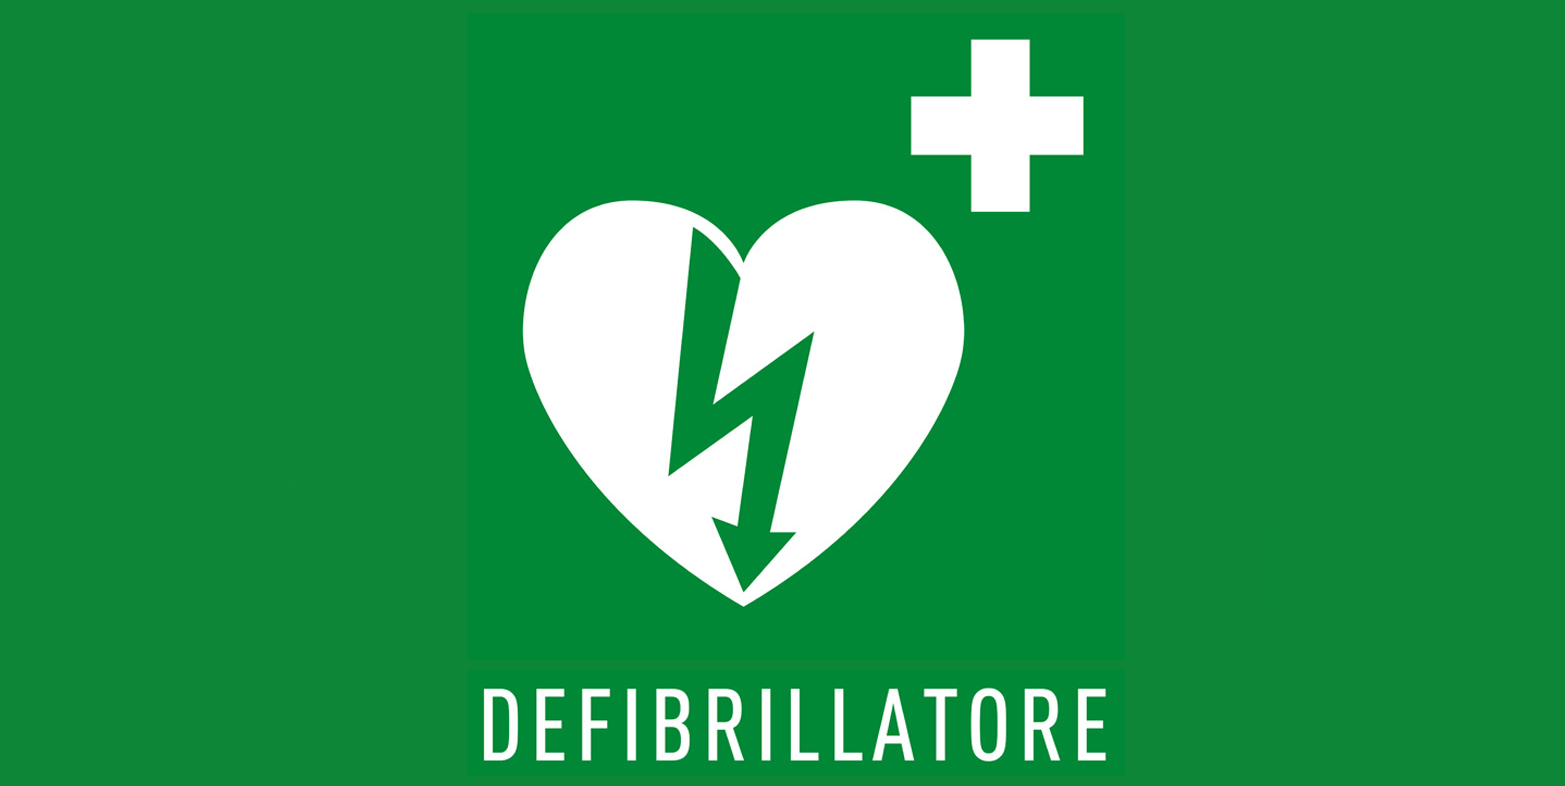 Obbligo di Dotazione dei Defibrillatori entro il 30 giugno 2017 per tutte le società sportive